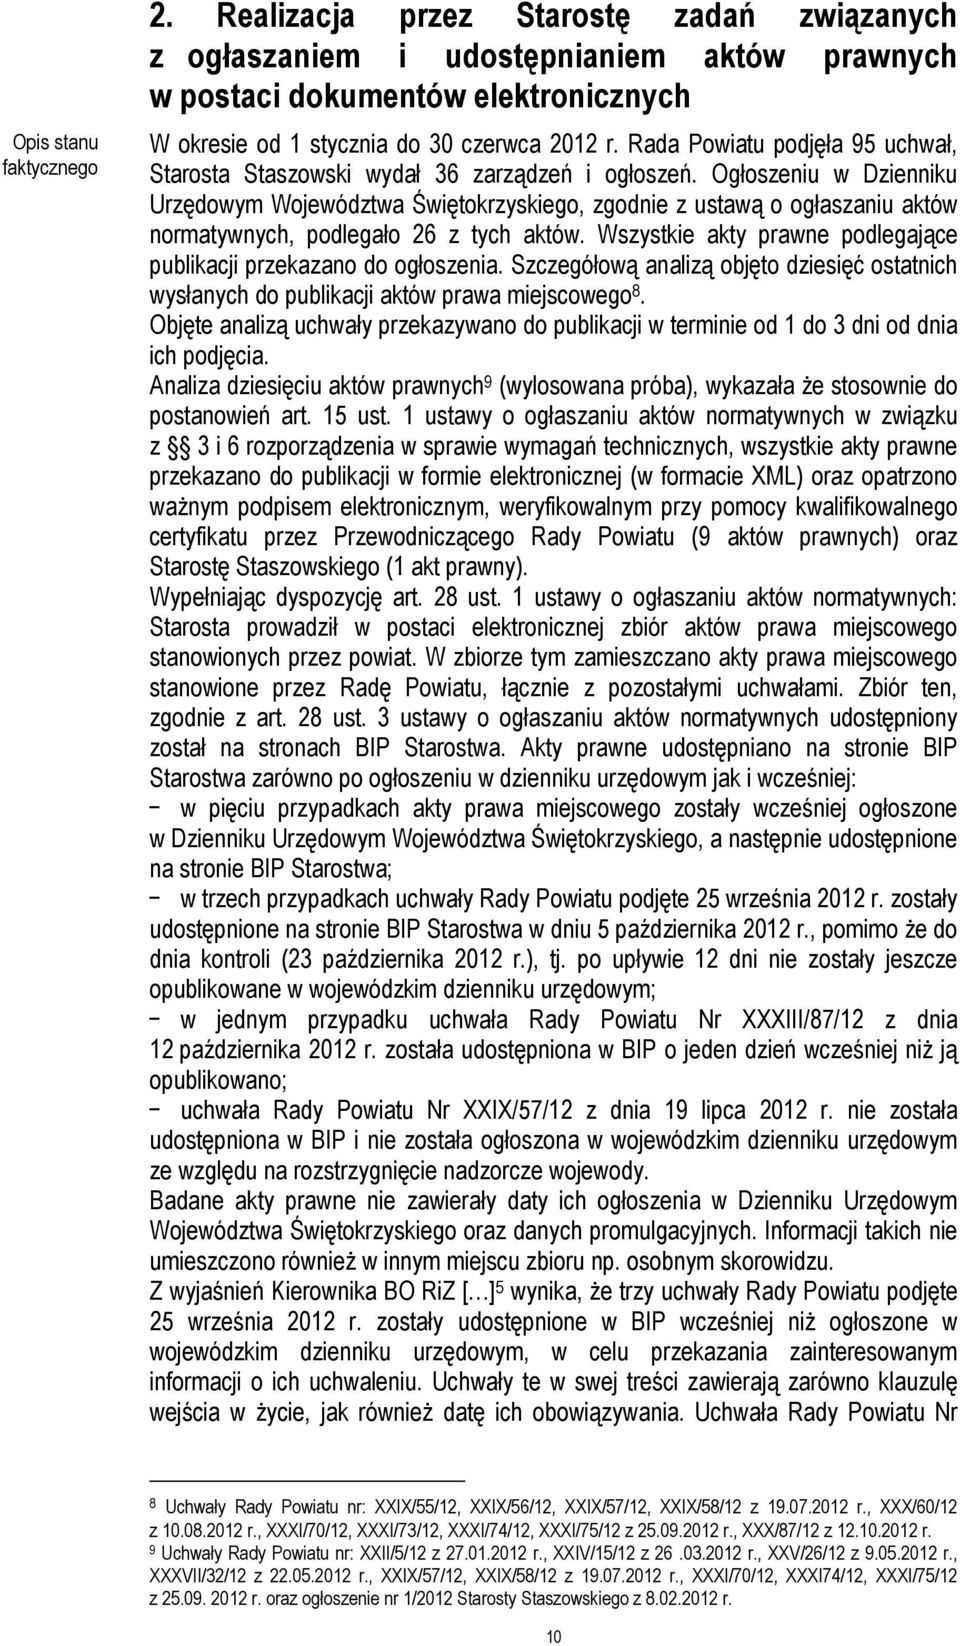 Ogłoszeniu w Dzienniku Urzędowym Województwa Świętokrzyskiego, zgodnie z ustawą o ogłaszaniu aktów normatywnych, podlegało 26 z tych aktów.